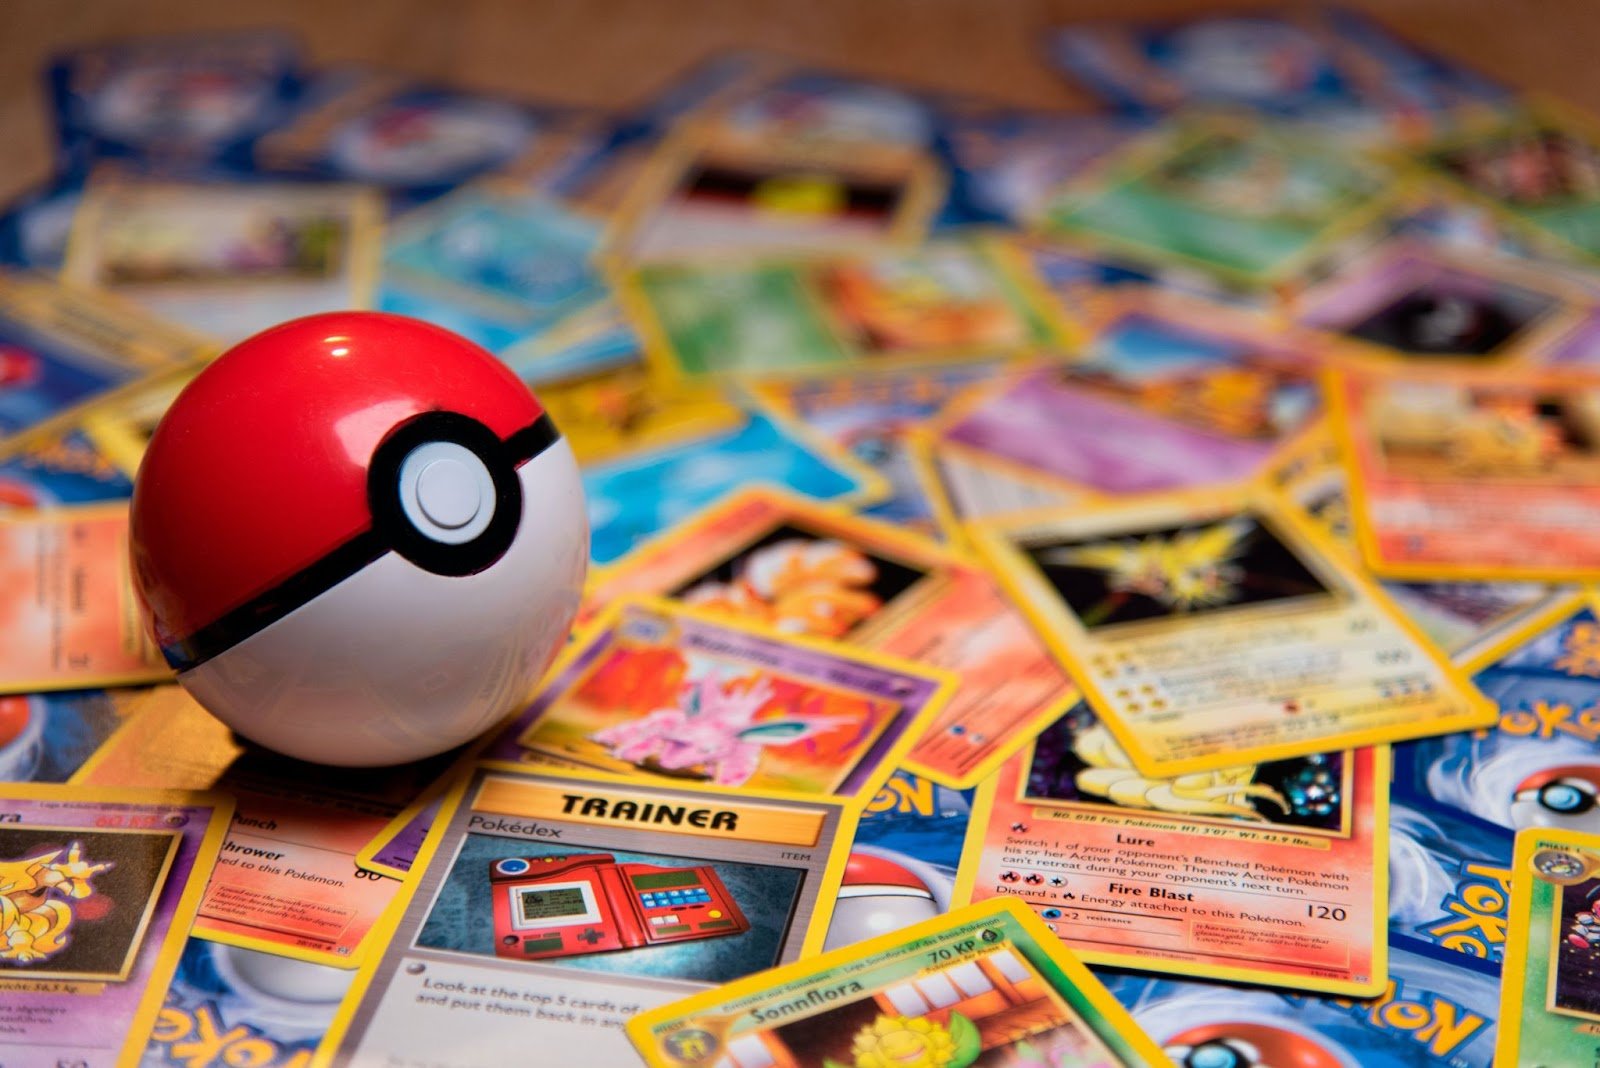 Pokémon sells the most merchandise